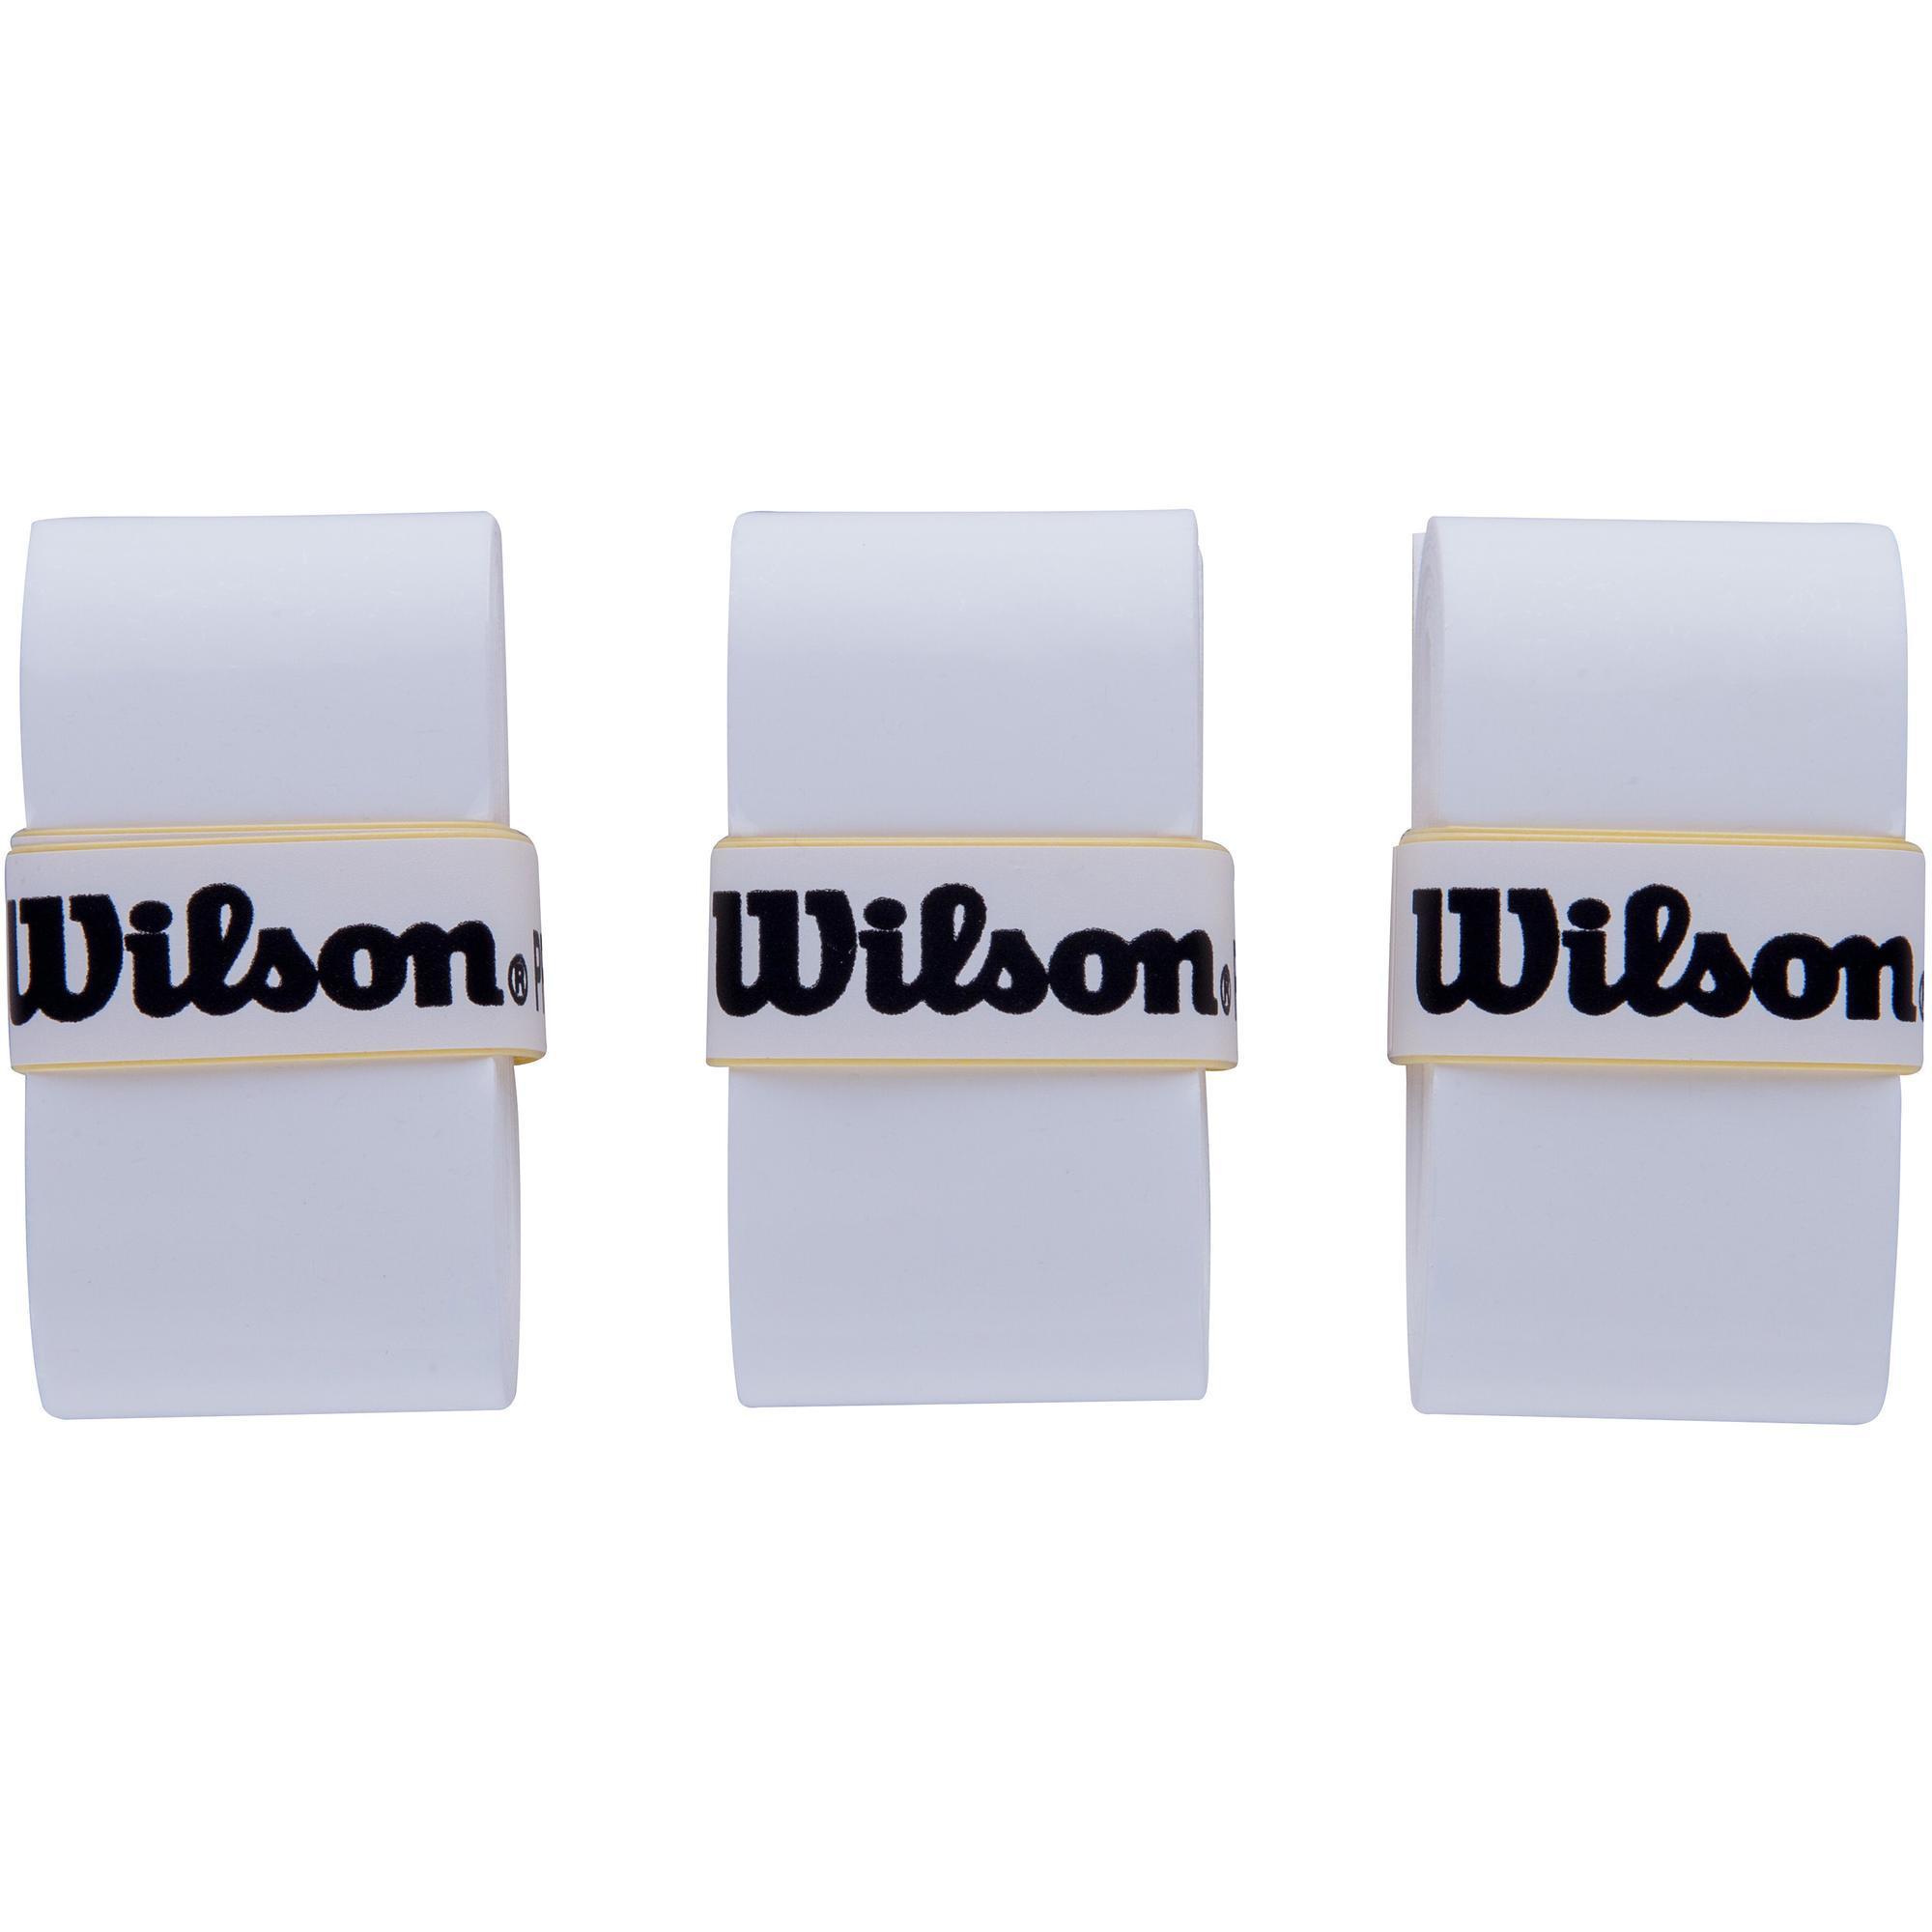 Wilson PRO OVERGRIP SENSATION 3er Pack weiß 